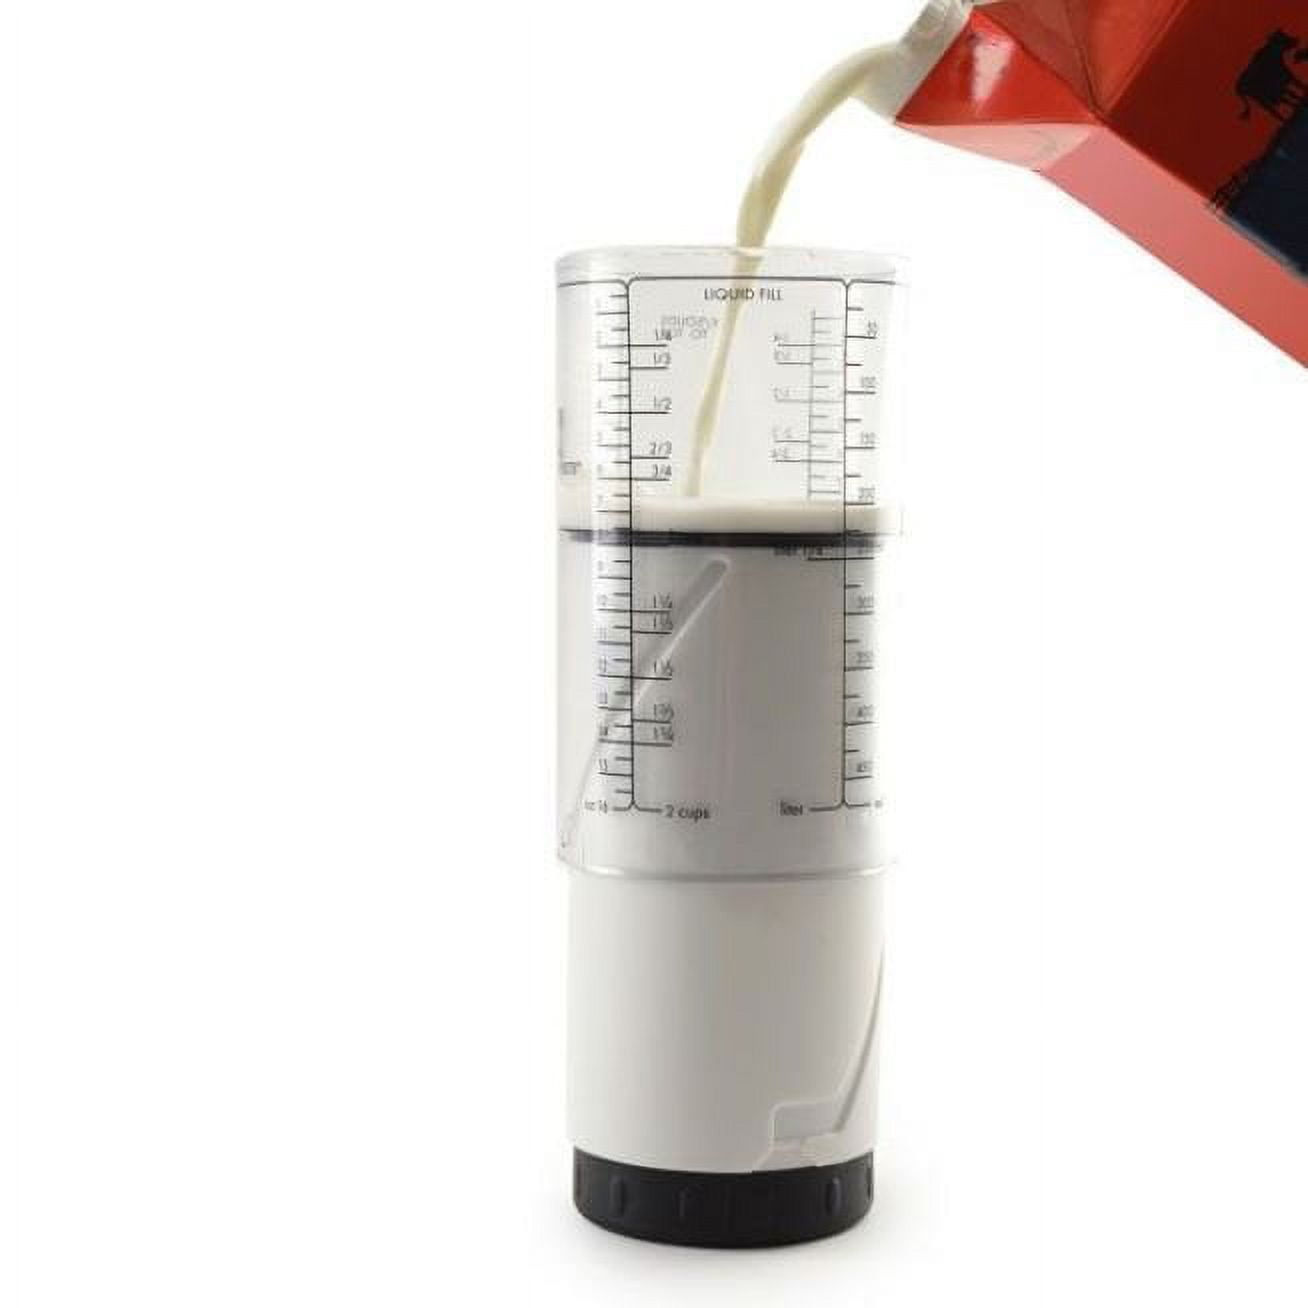 OXO Adjustable Measuring Beakers 